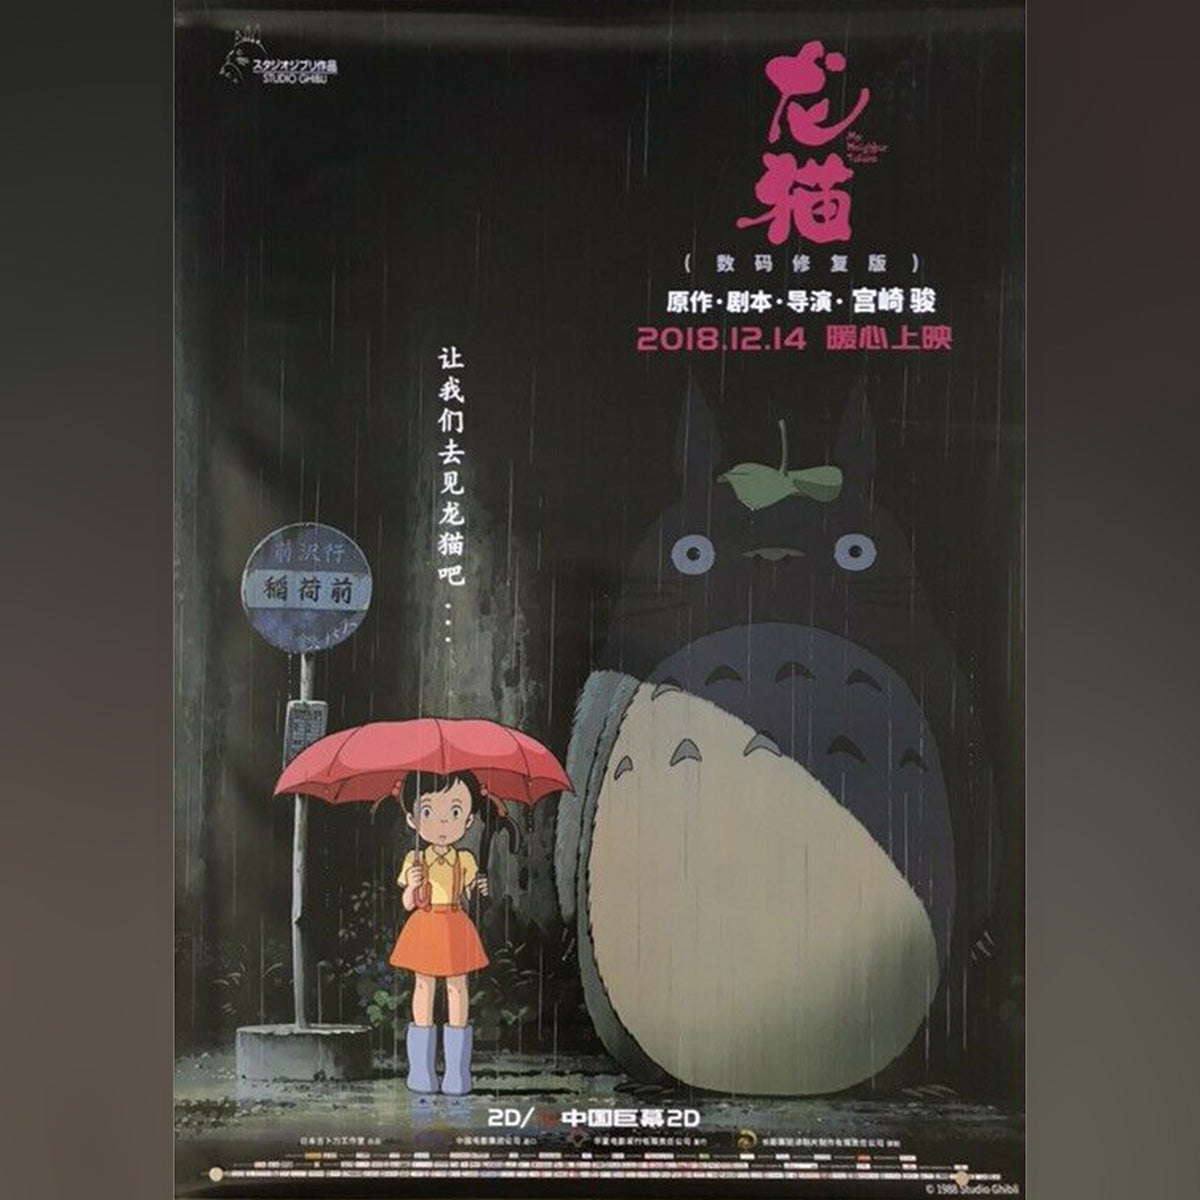 Original Movie Poster of My Neighbor Totoro (2018R)